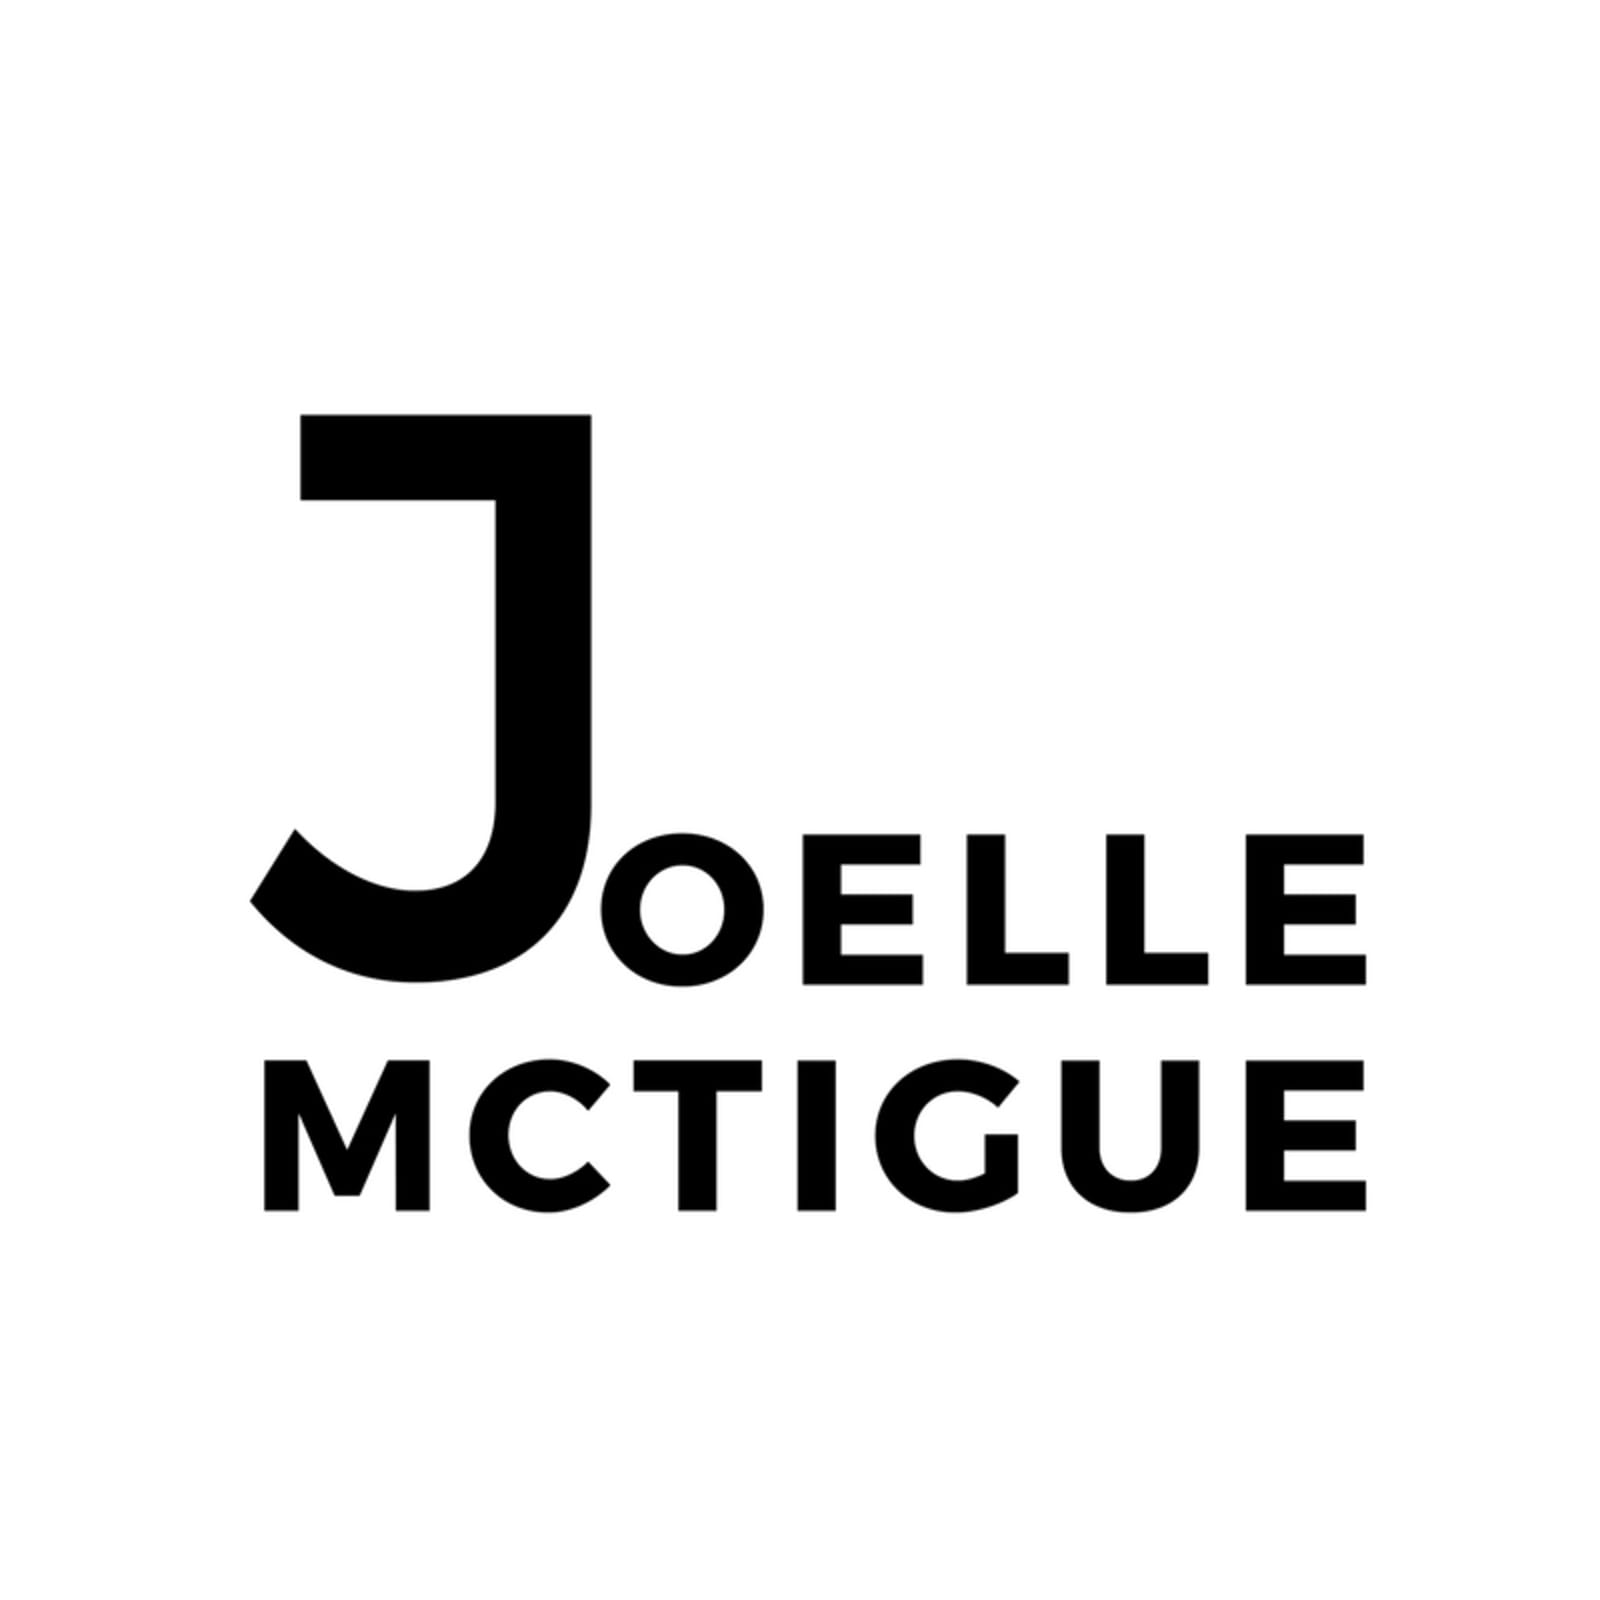 Joelle_McTigue_Video.jpg